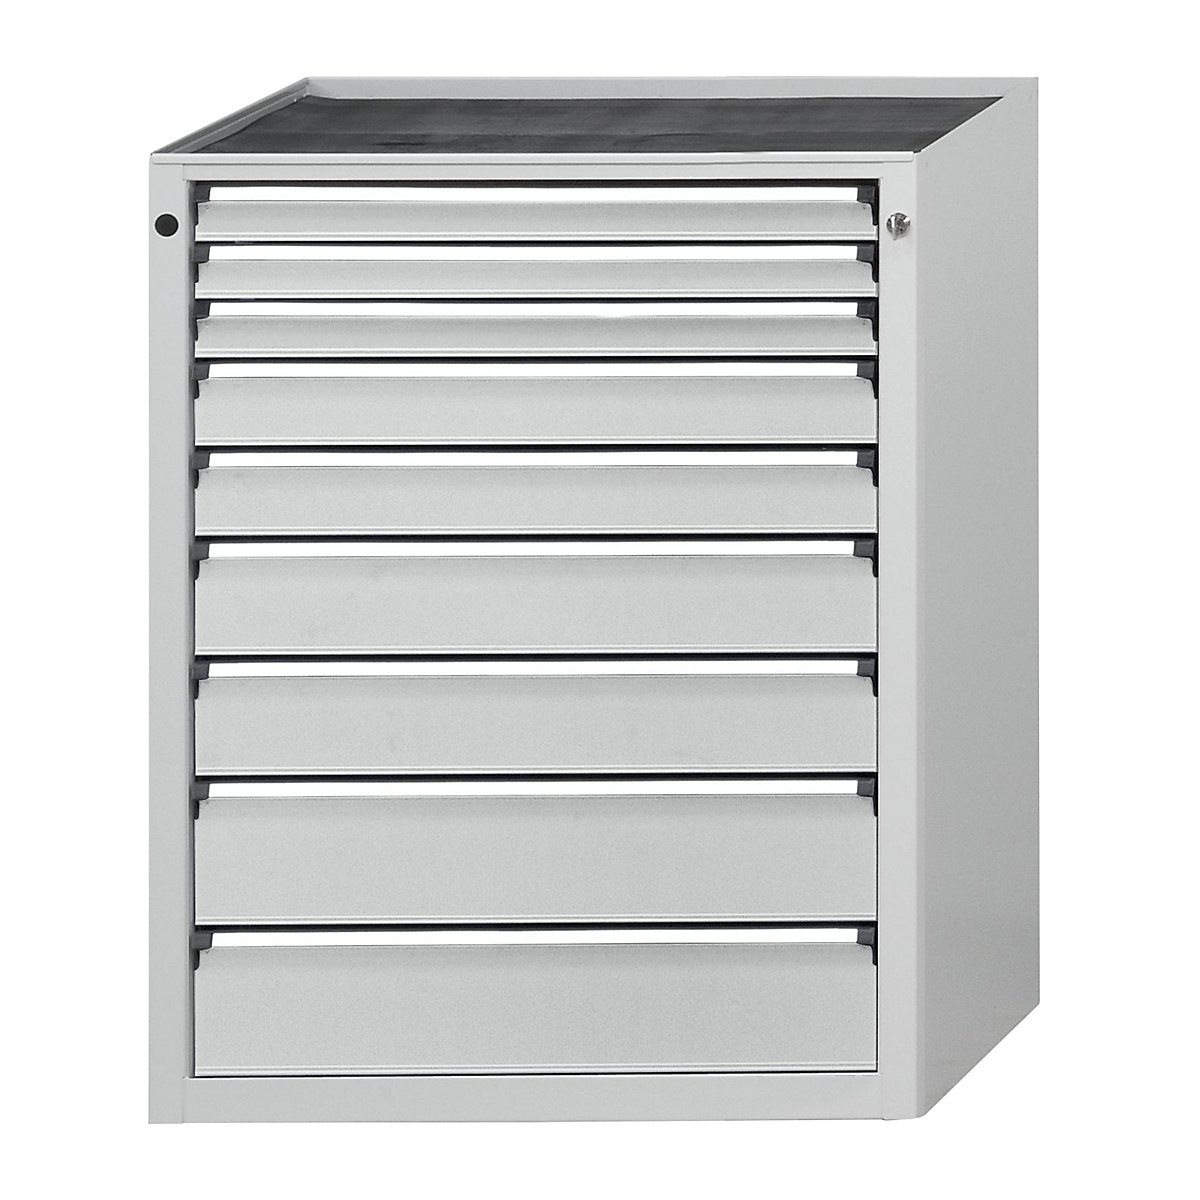 Zásuvková skříň – ANKE, š x h 760 x 675 mm, nosnost zásuvky 200 kg, 9 zásuvek, výška 1280 mm, čelo světle šedé-8